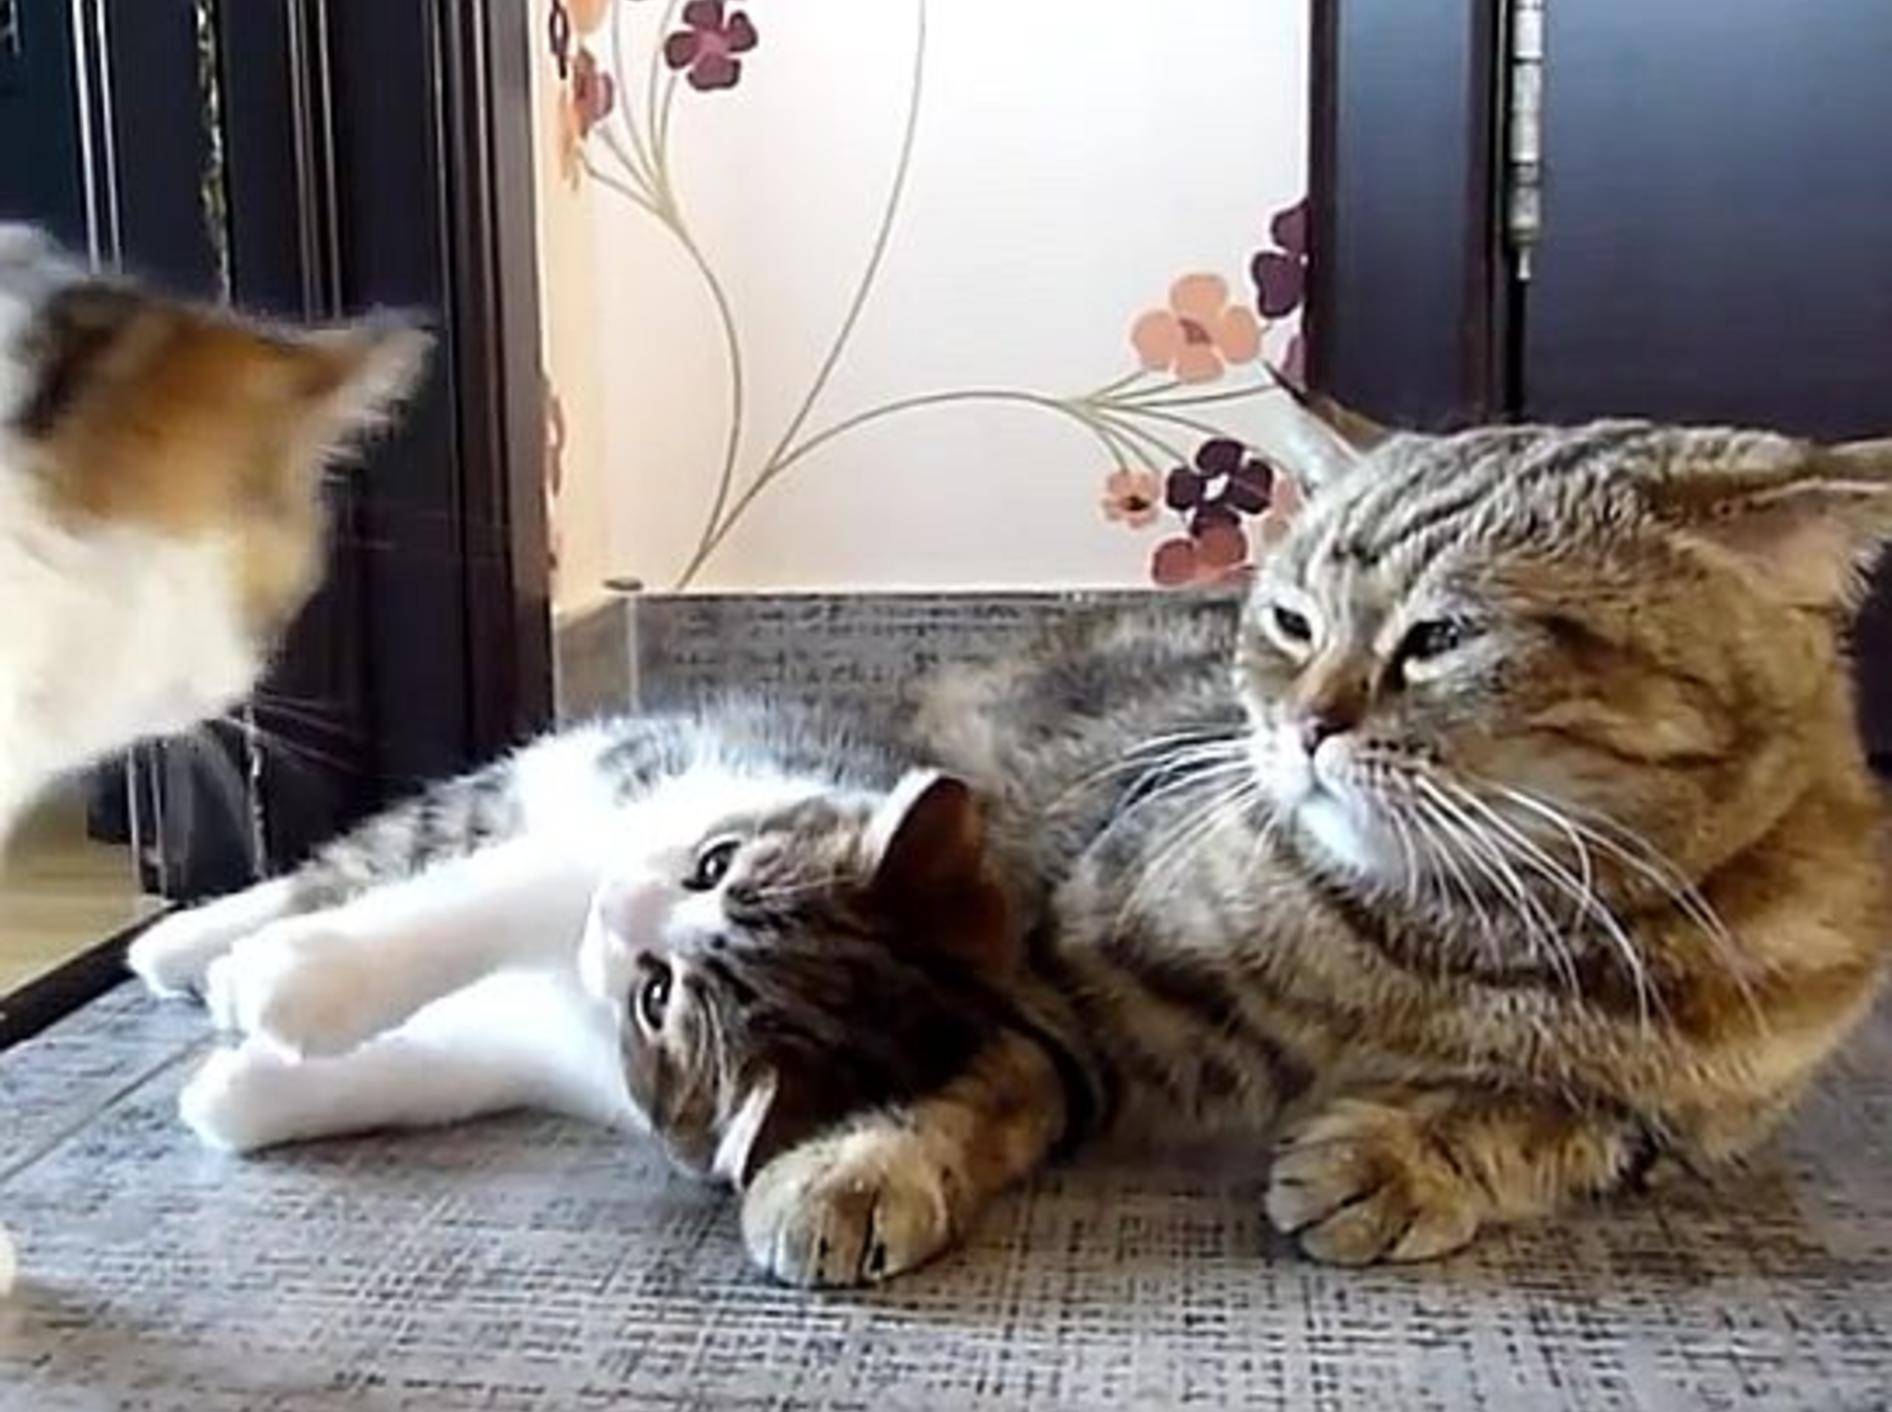 Katzenbabys stören ihre Mama beim Schlafen – Bild: Youtube / Funnycatsandnicefish